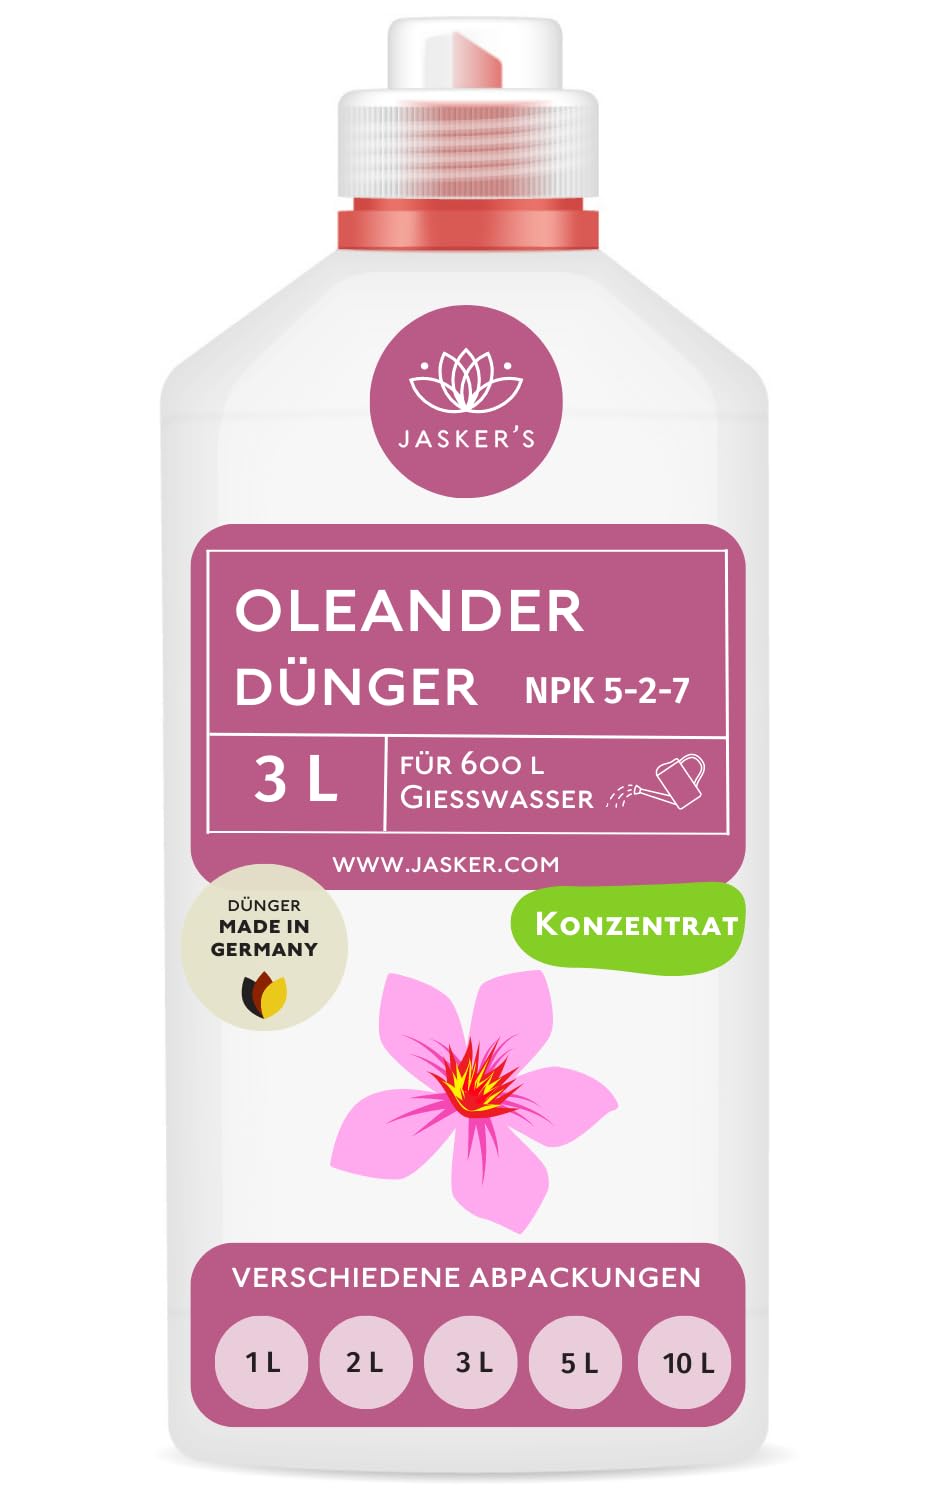 Oleander Dünger flüssig 3 Liter - Konzentrat Dünger Oleander - Mediterraner Pflanzendünger für 600 Liter Gießwasser - 100% Schnelldünger - Dünger für Oleander - Oleanderdünger